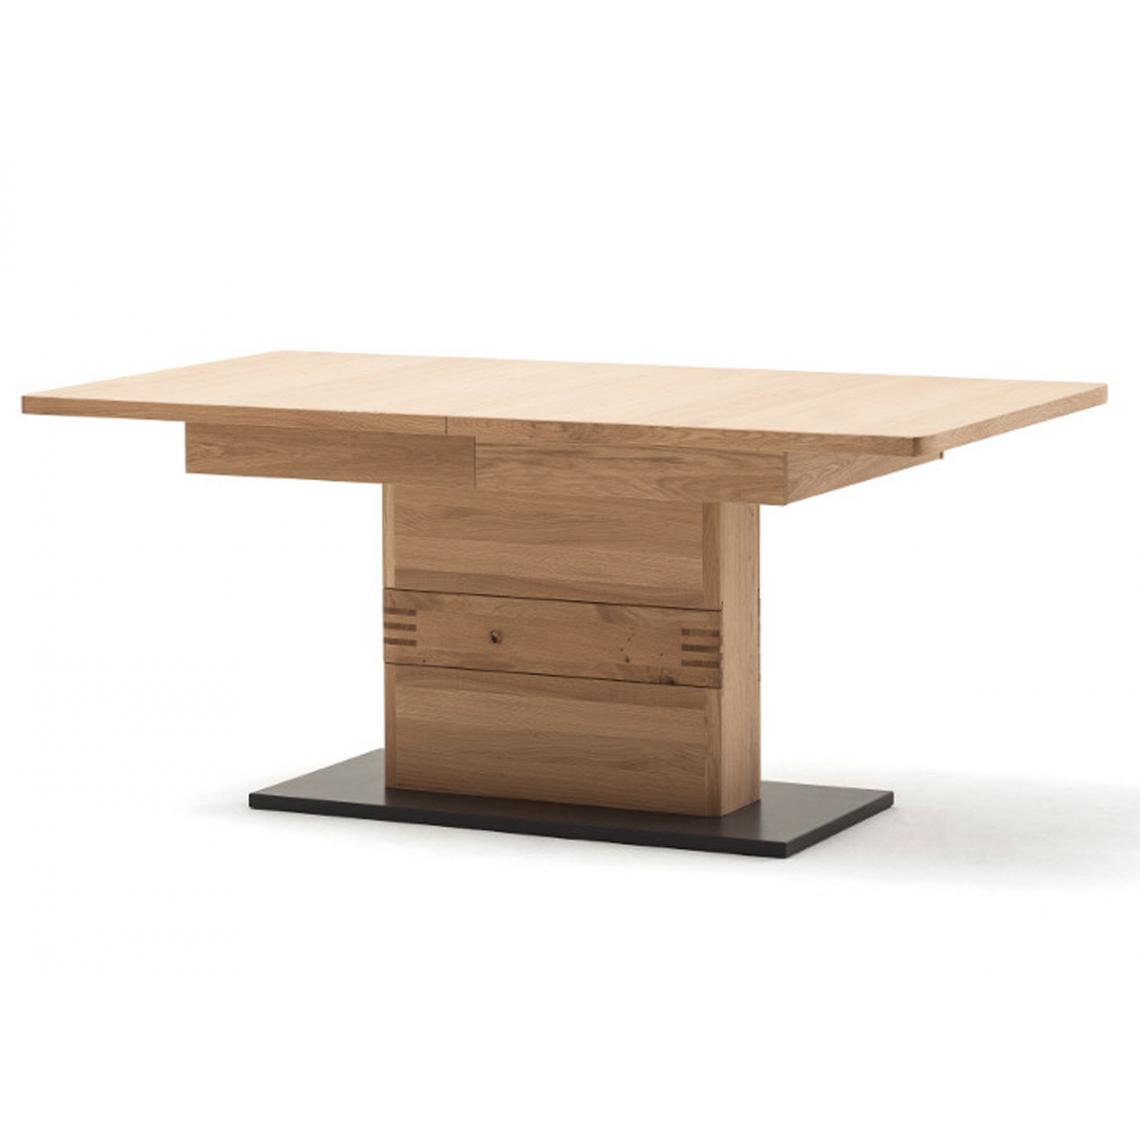 Pegane - Table à manger extensible en chêne sombre bianco - L.180-280 x H.77 x P.100 cm - Tables à manger